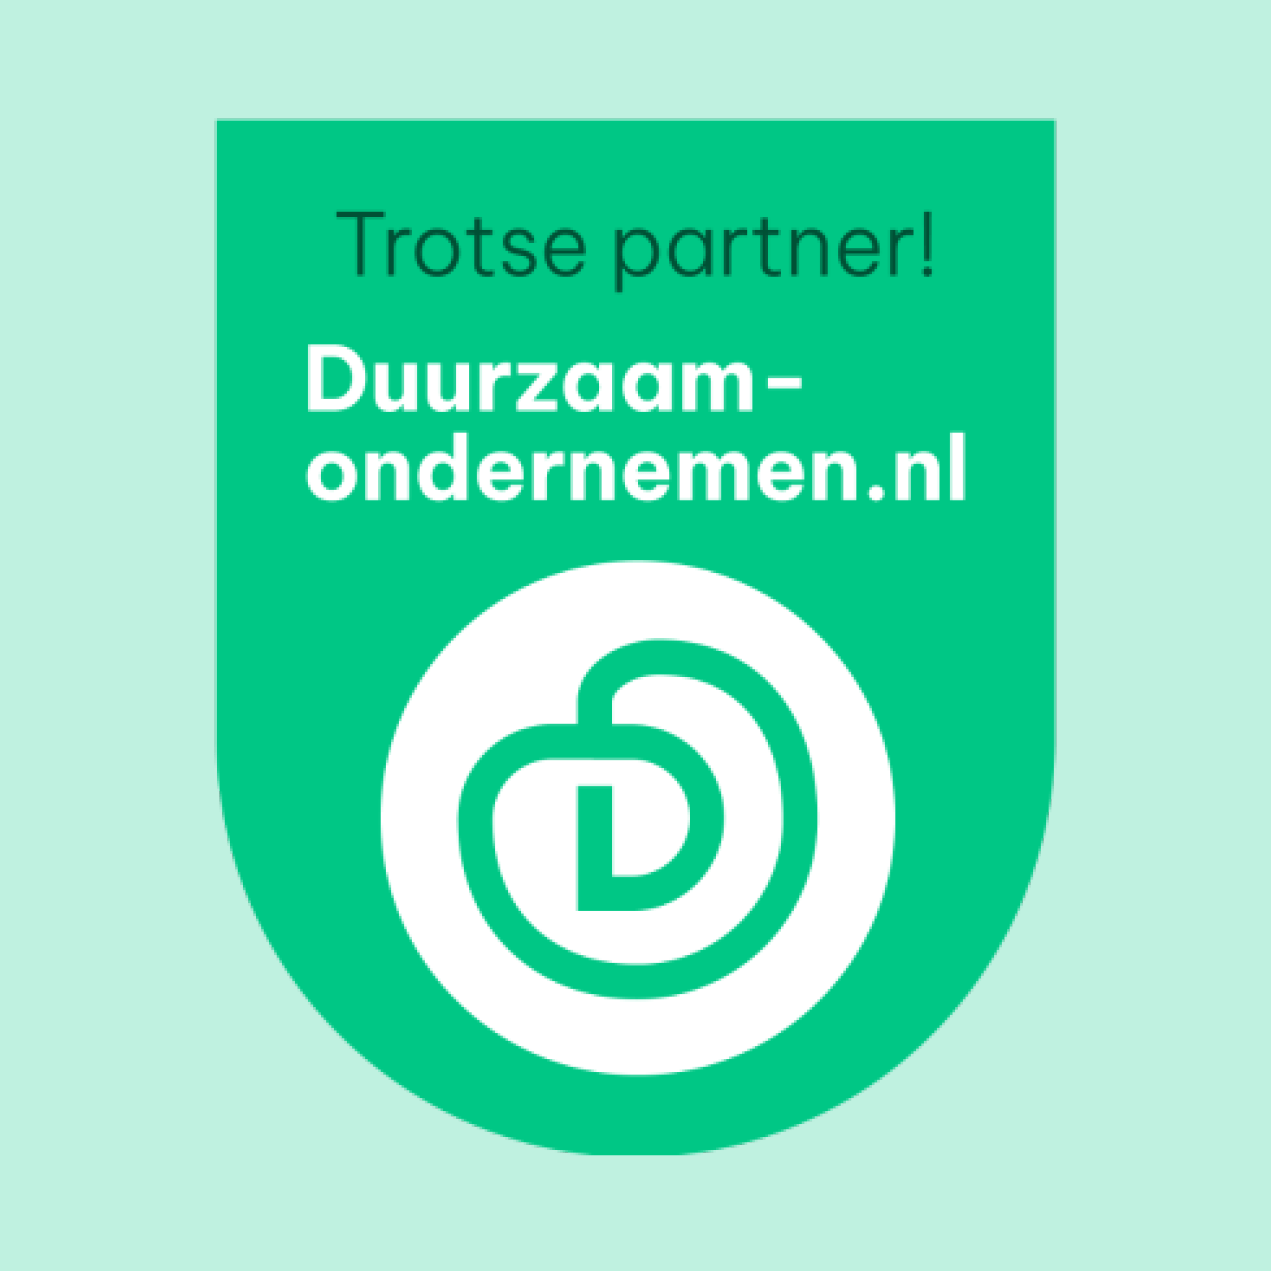 Ein Treffen mit dem CSR-Partner - Duurzaamondermenemen.nl